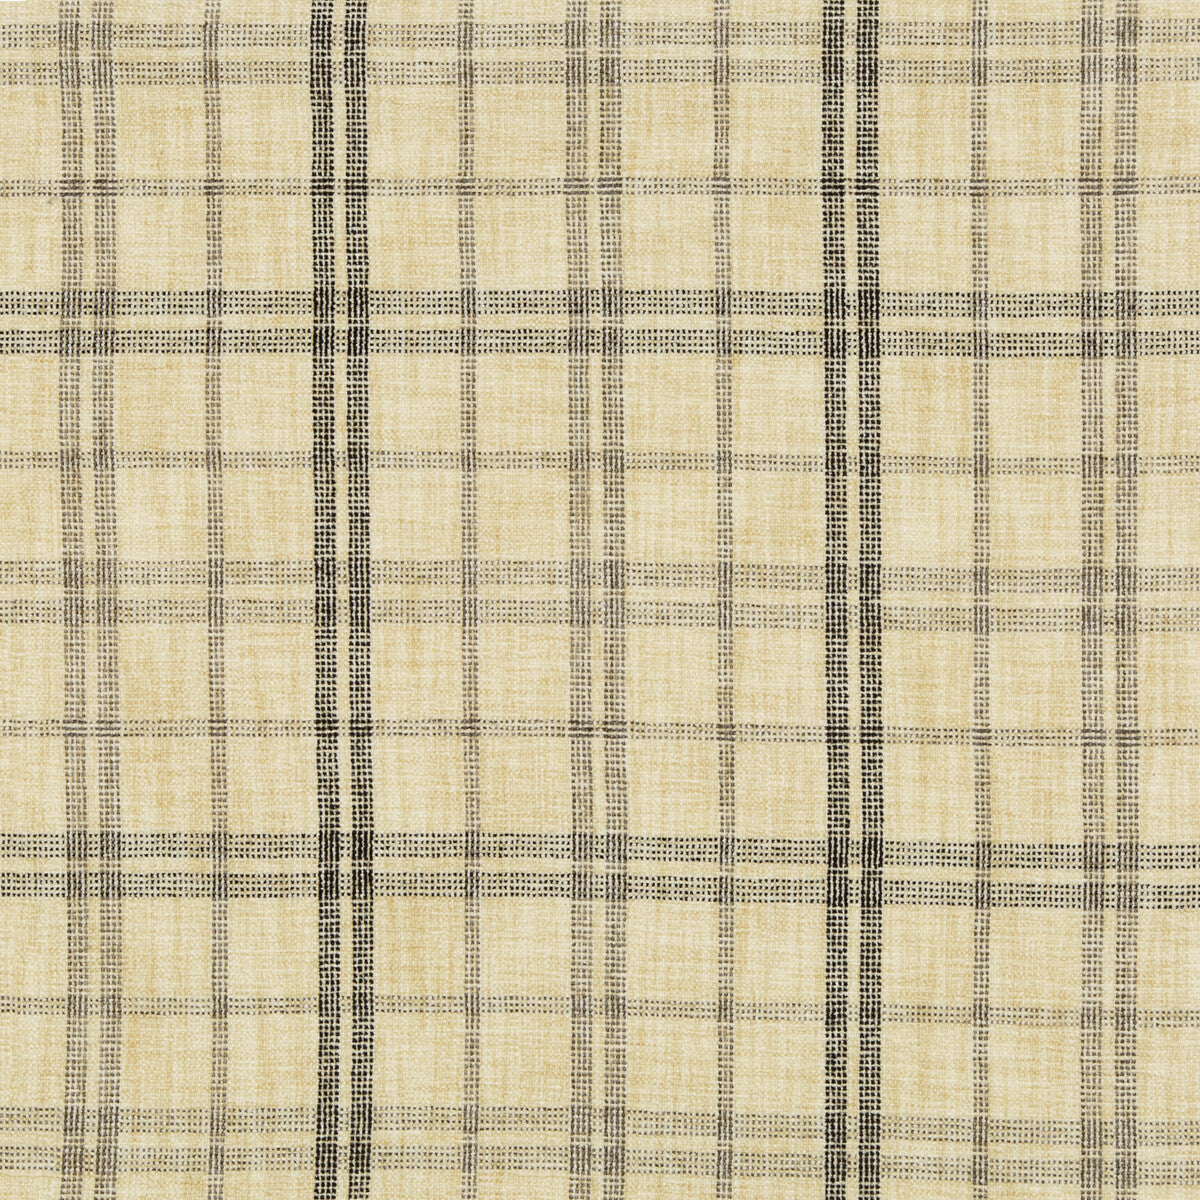 Kravet Basics fabric in 35777-81 color - pattern 35777.81.0 - by Kravet Basics